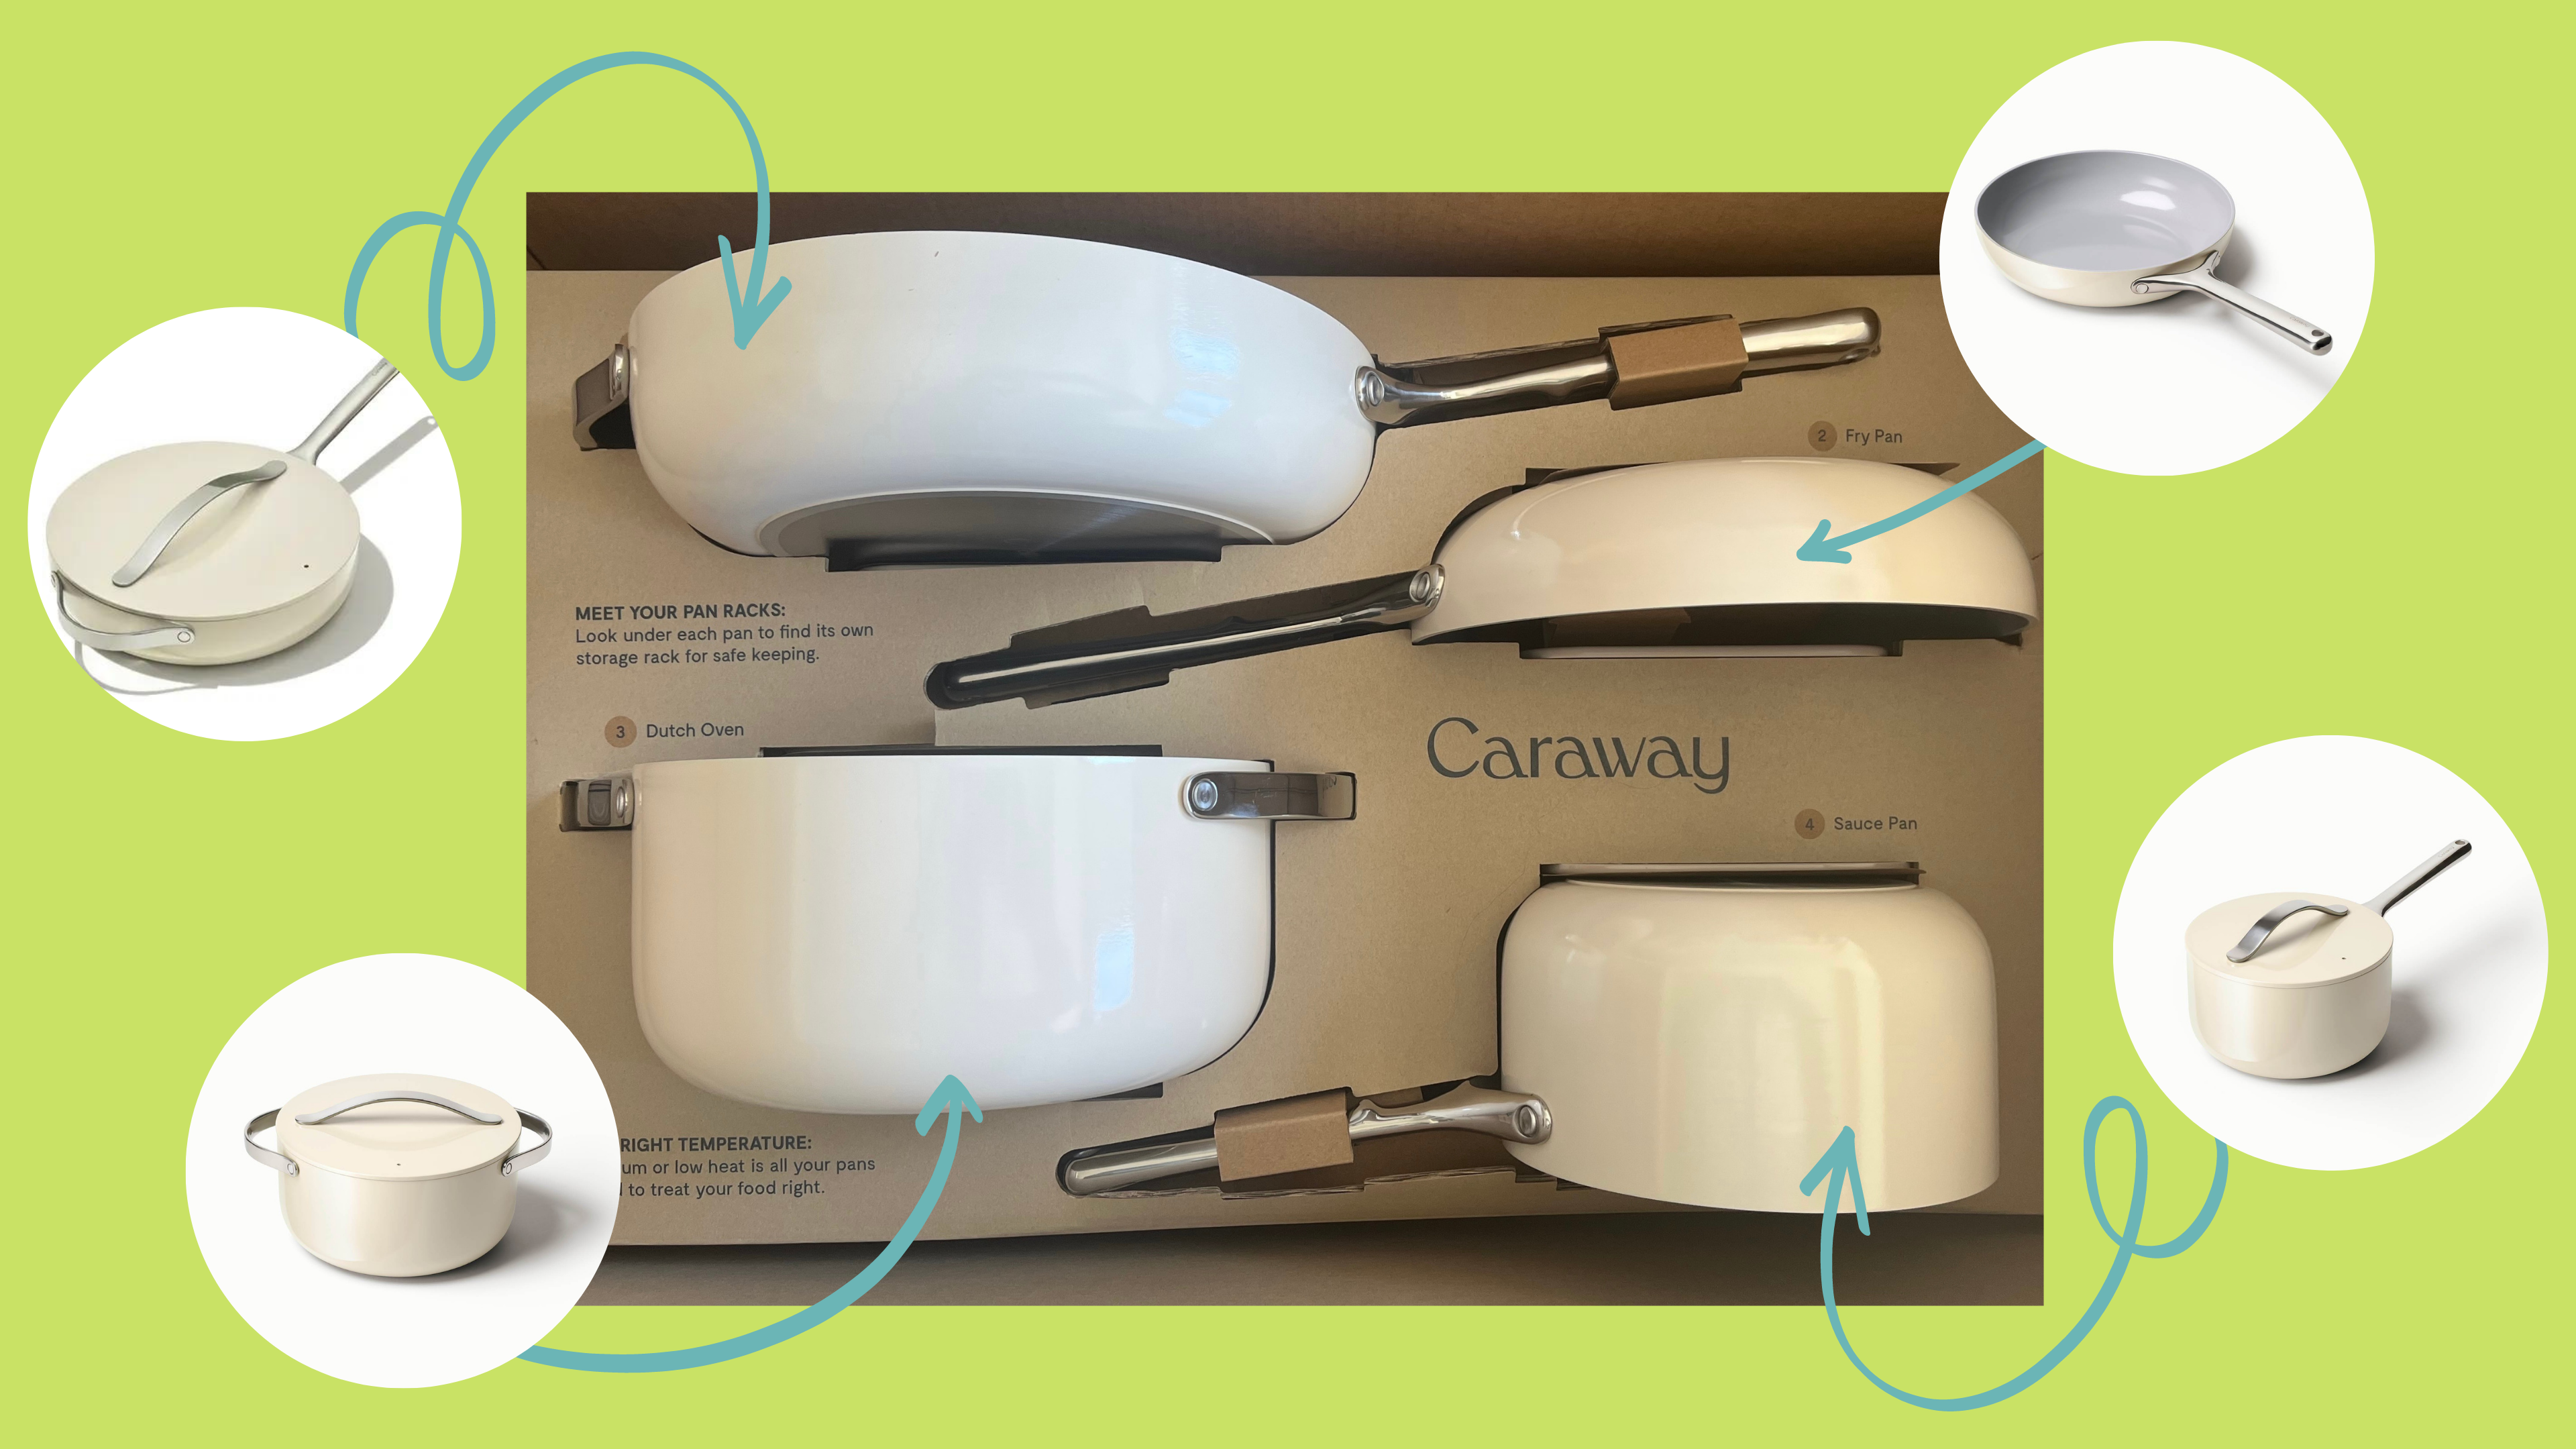 Caraway 3-Quart Sauce Pan Review